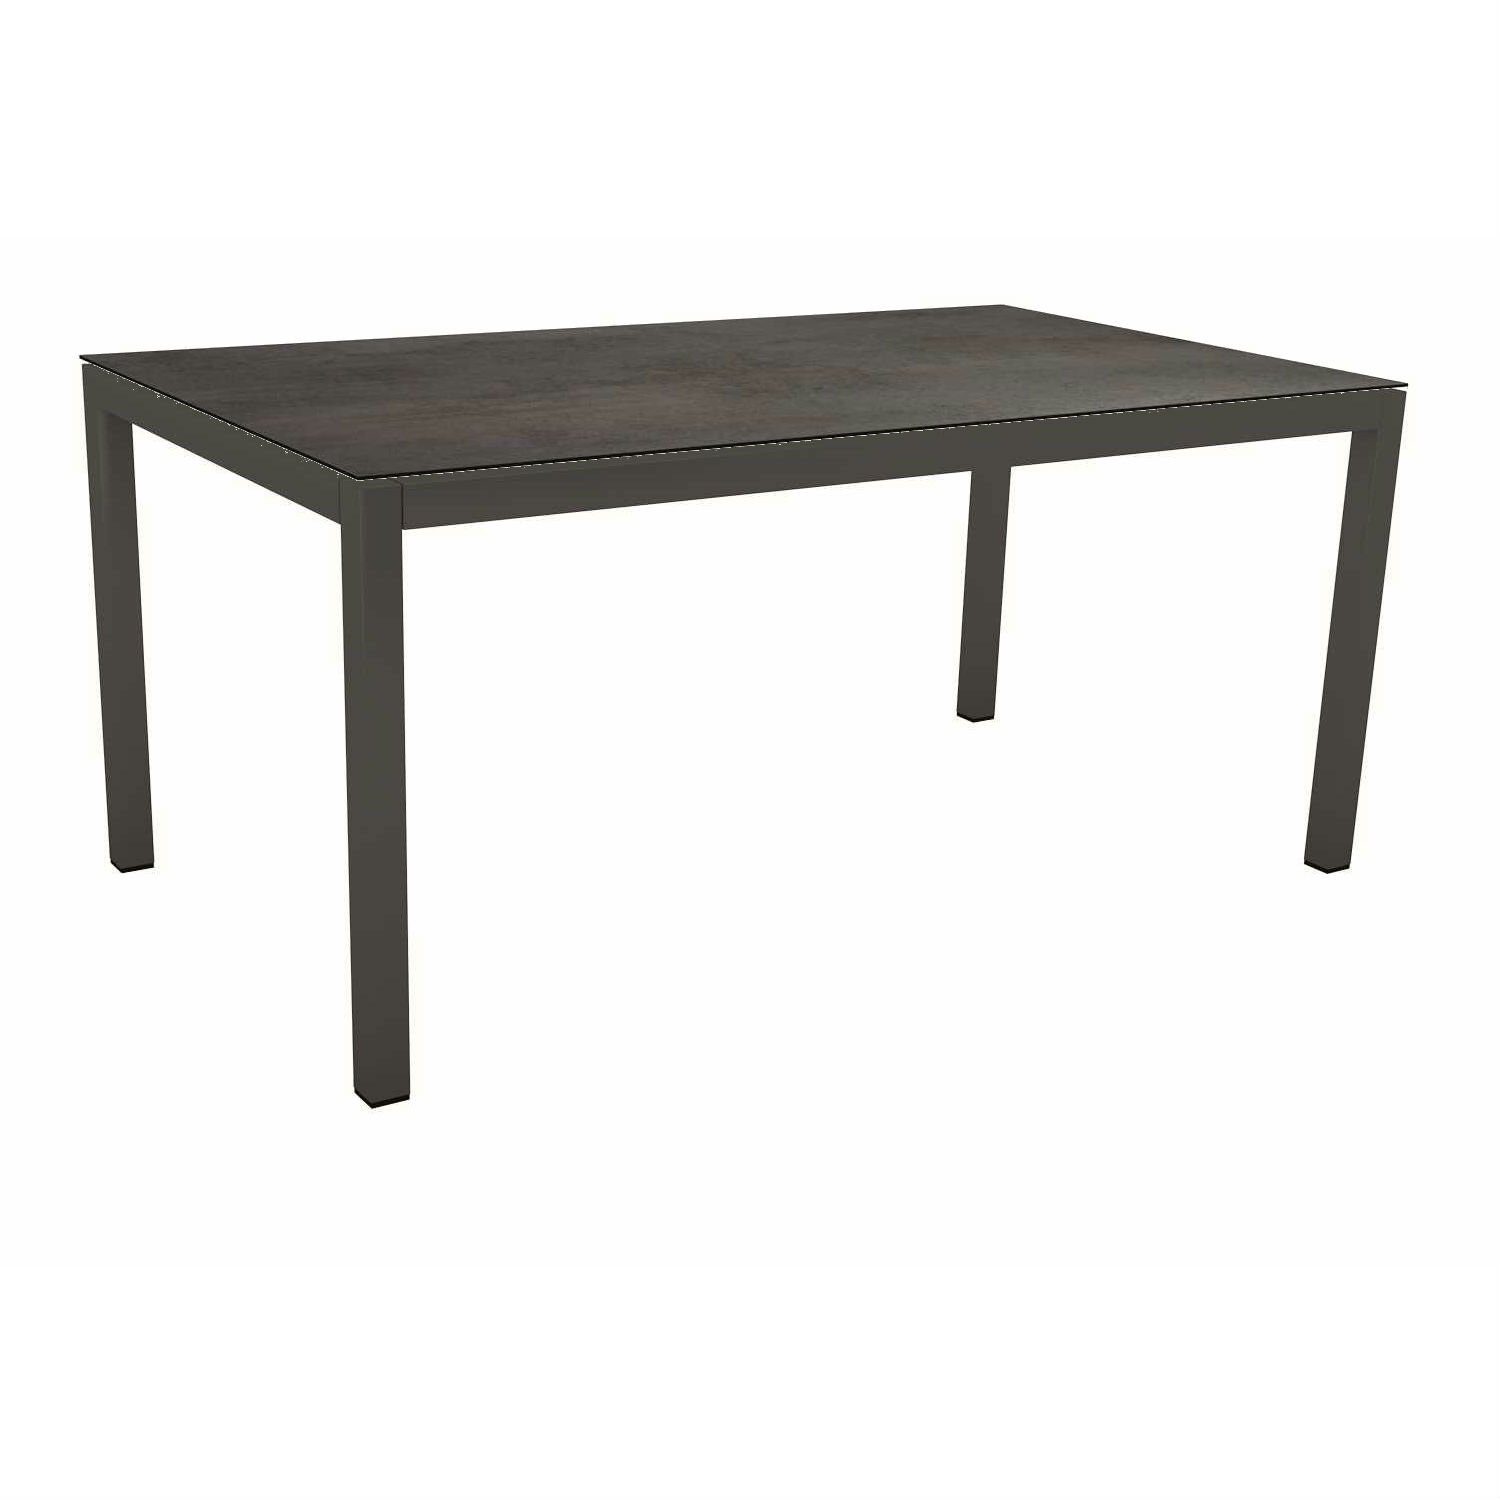 Stern Tischsystem Gartentisch, Gestell Aluminium anthrazit, Tischplatte HPL Nitro, Maße: 130x80 cm